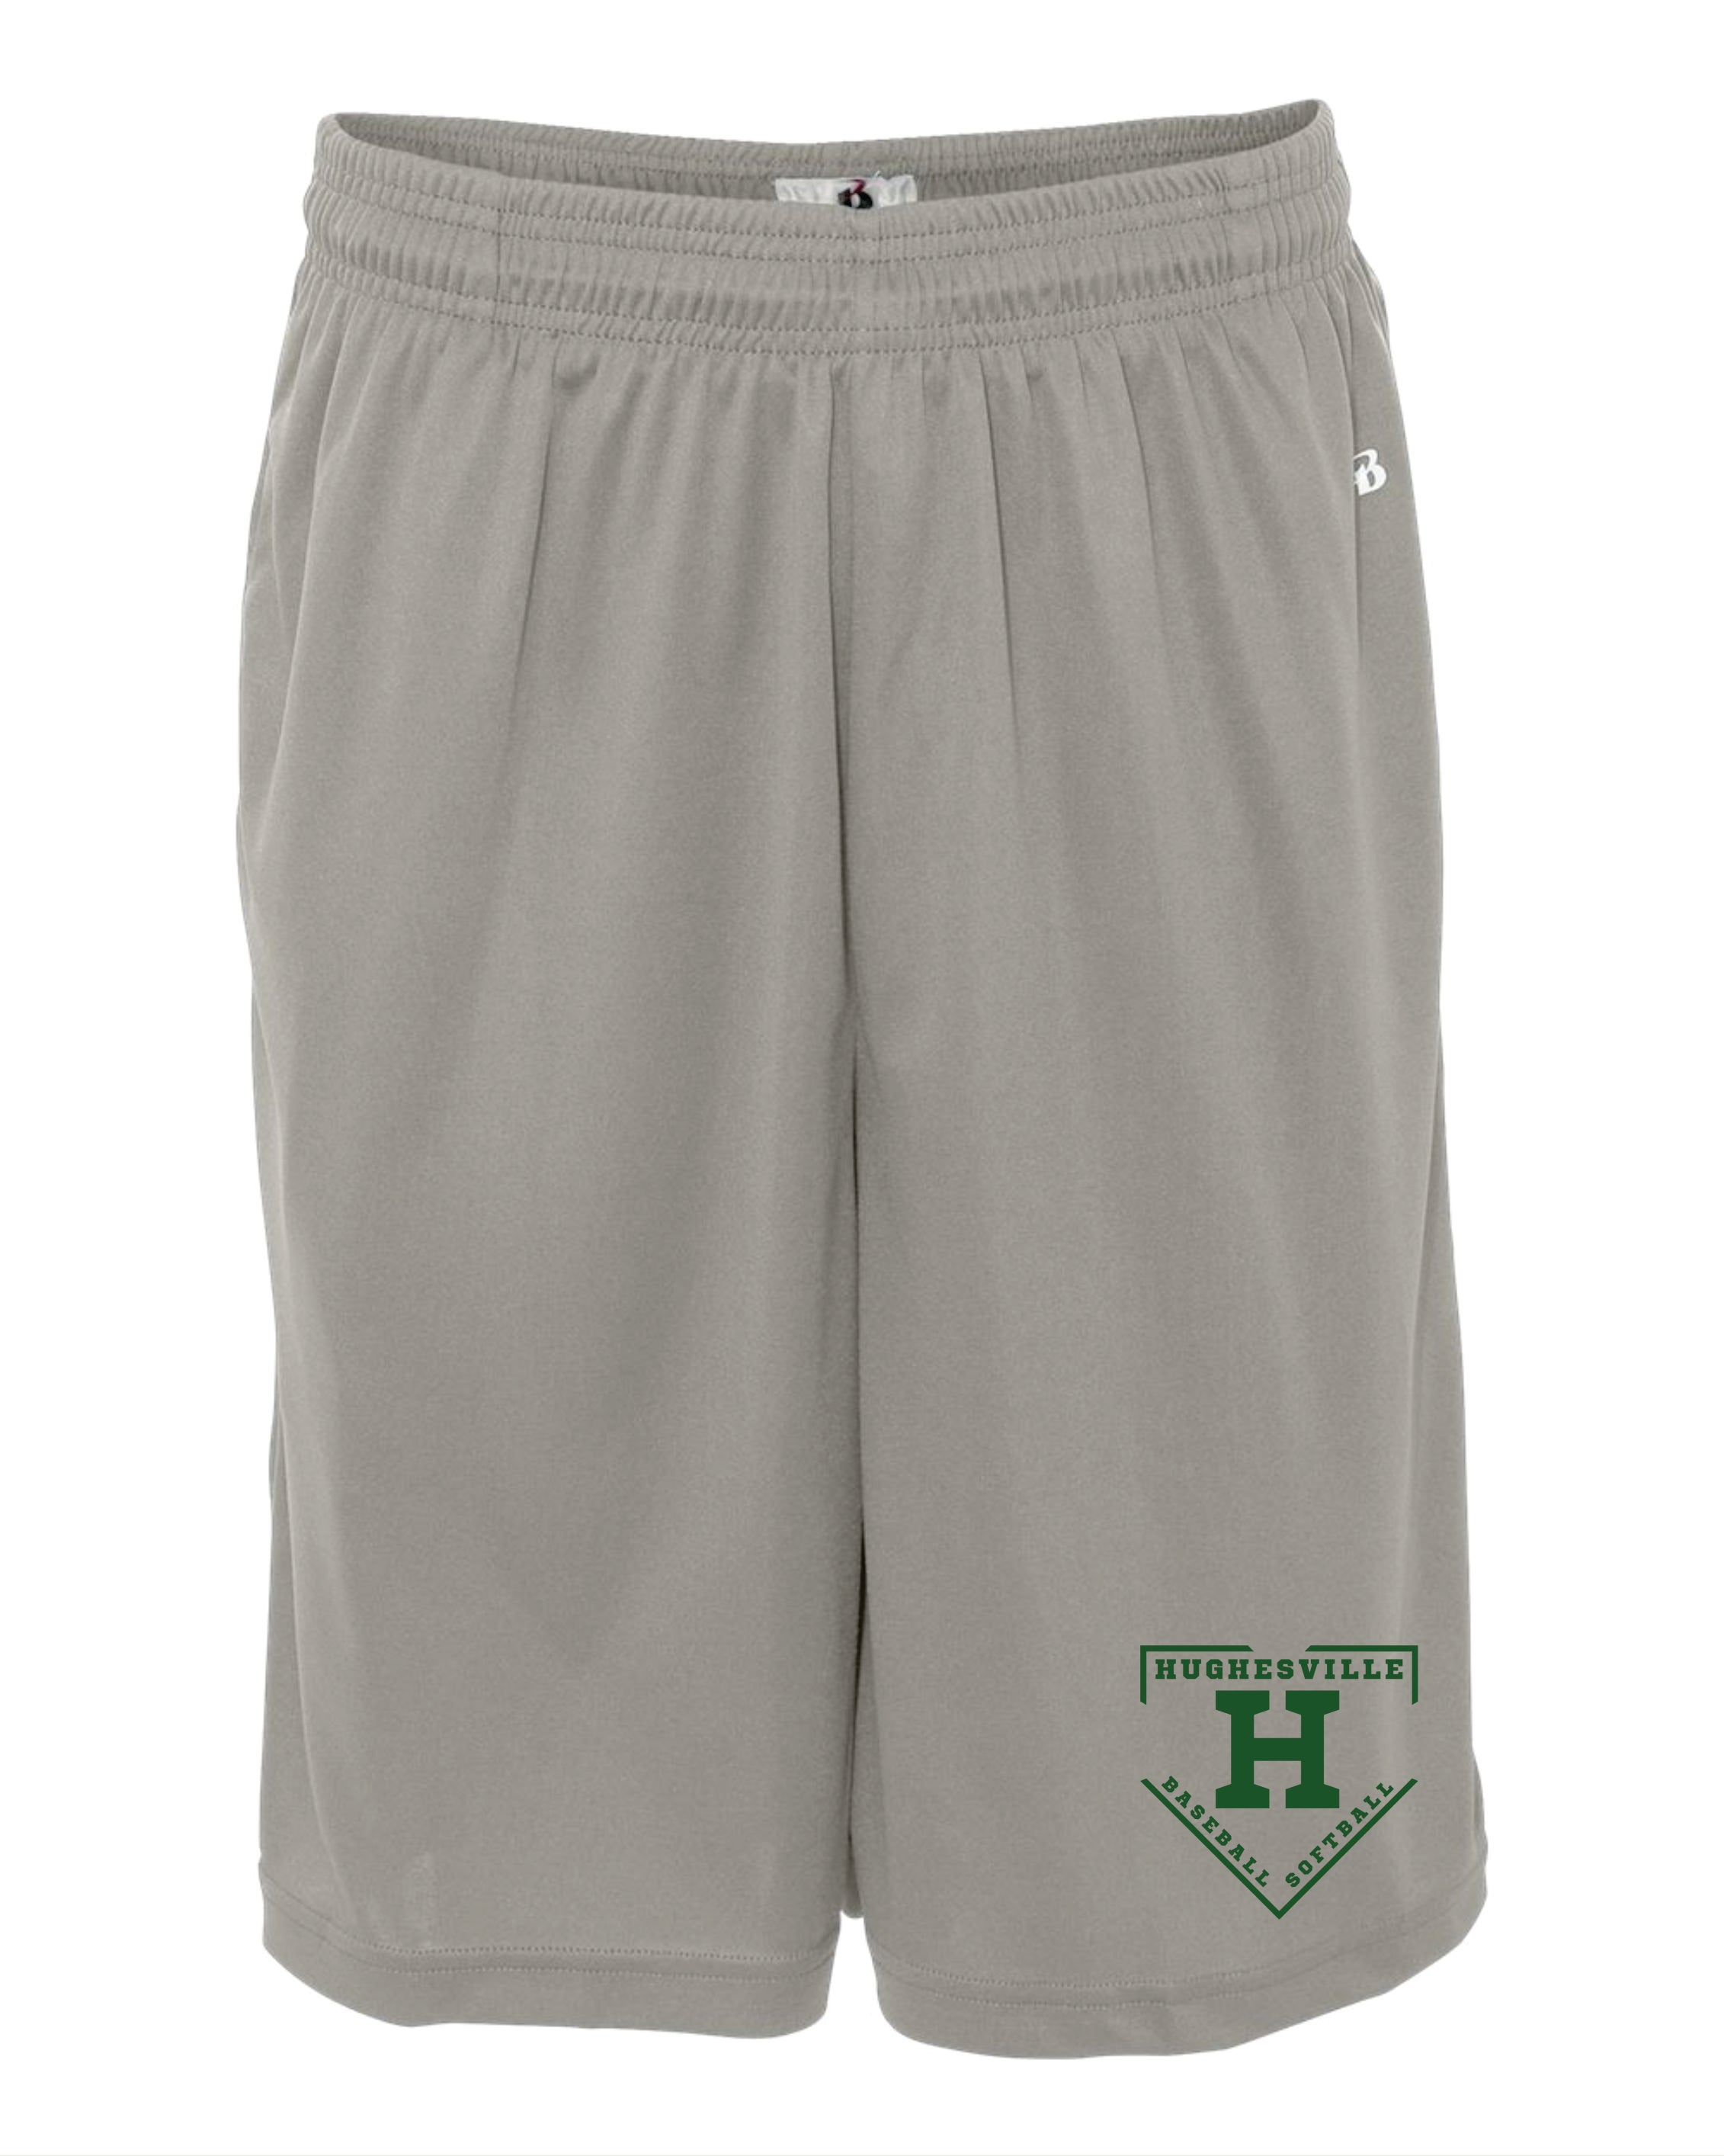 Hughesville Shorts-MENS